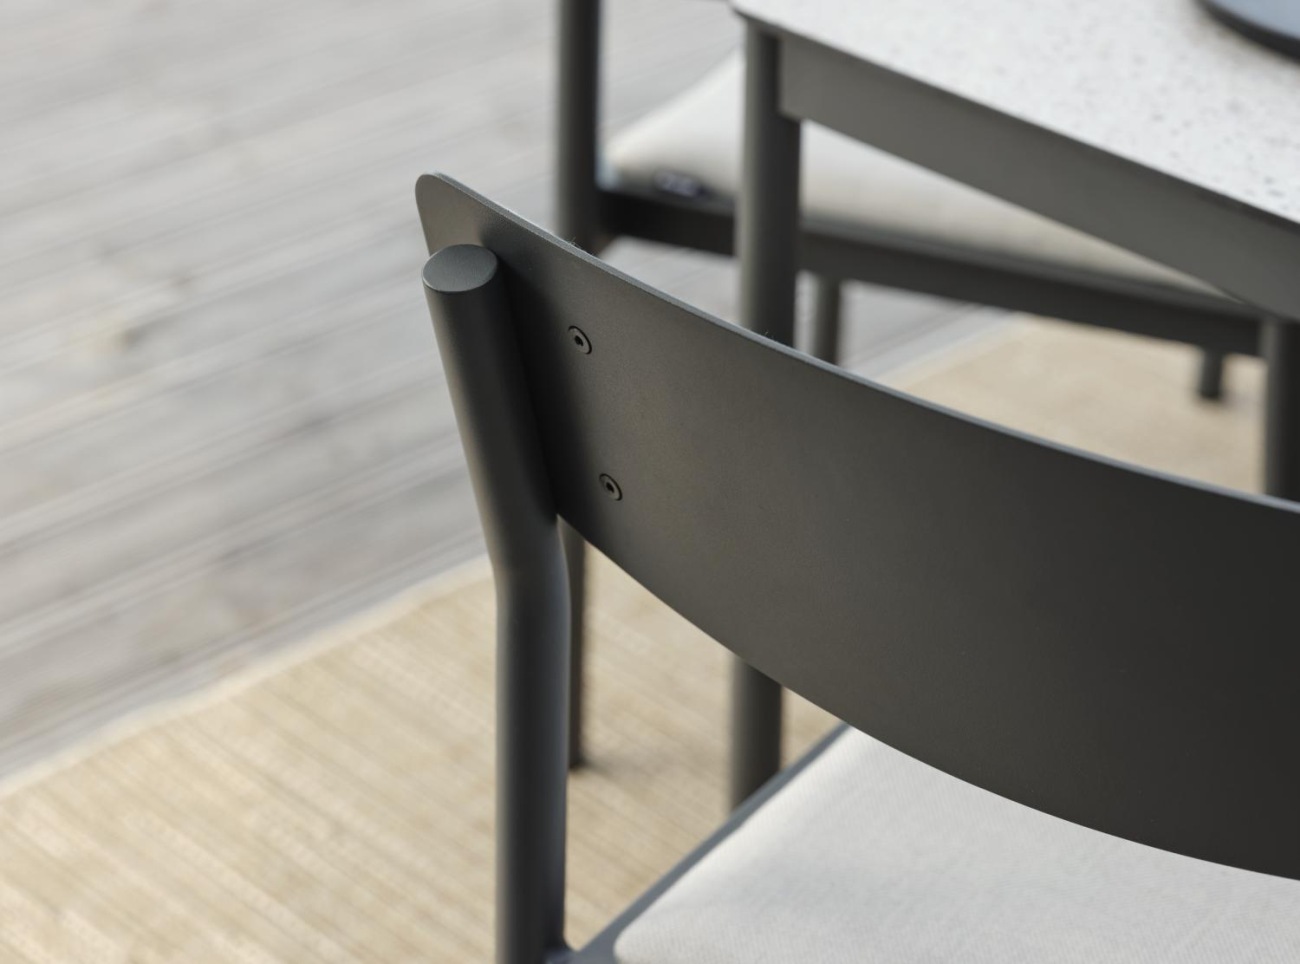 Der Gartenstuhl Gusty überzeugt mit seinem modernen Design. Gefertigt wurde er aus Stoff, welches einen hellgrauen Farbton besitzt. Das Gestell ist aus Metall und hat eine Anthrazit Farbe. Die Sitzhöhe des Stuhls beträgt 47 cm.